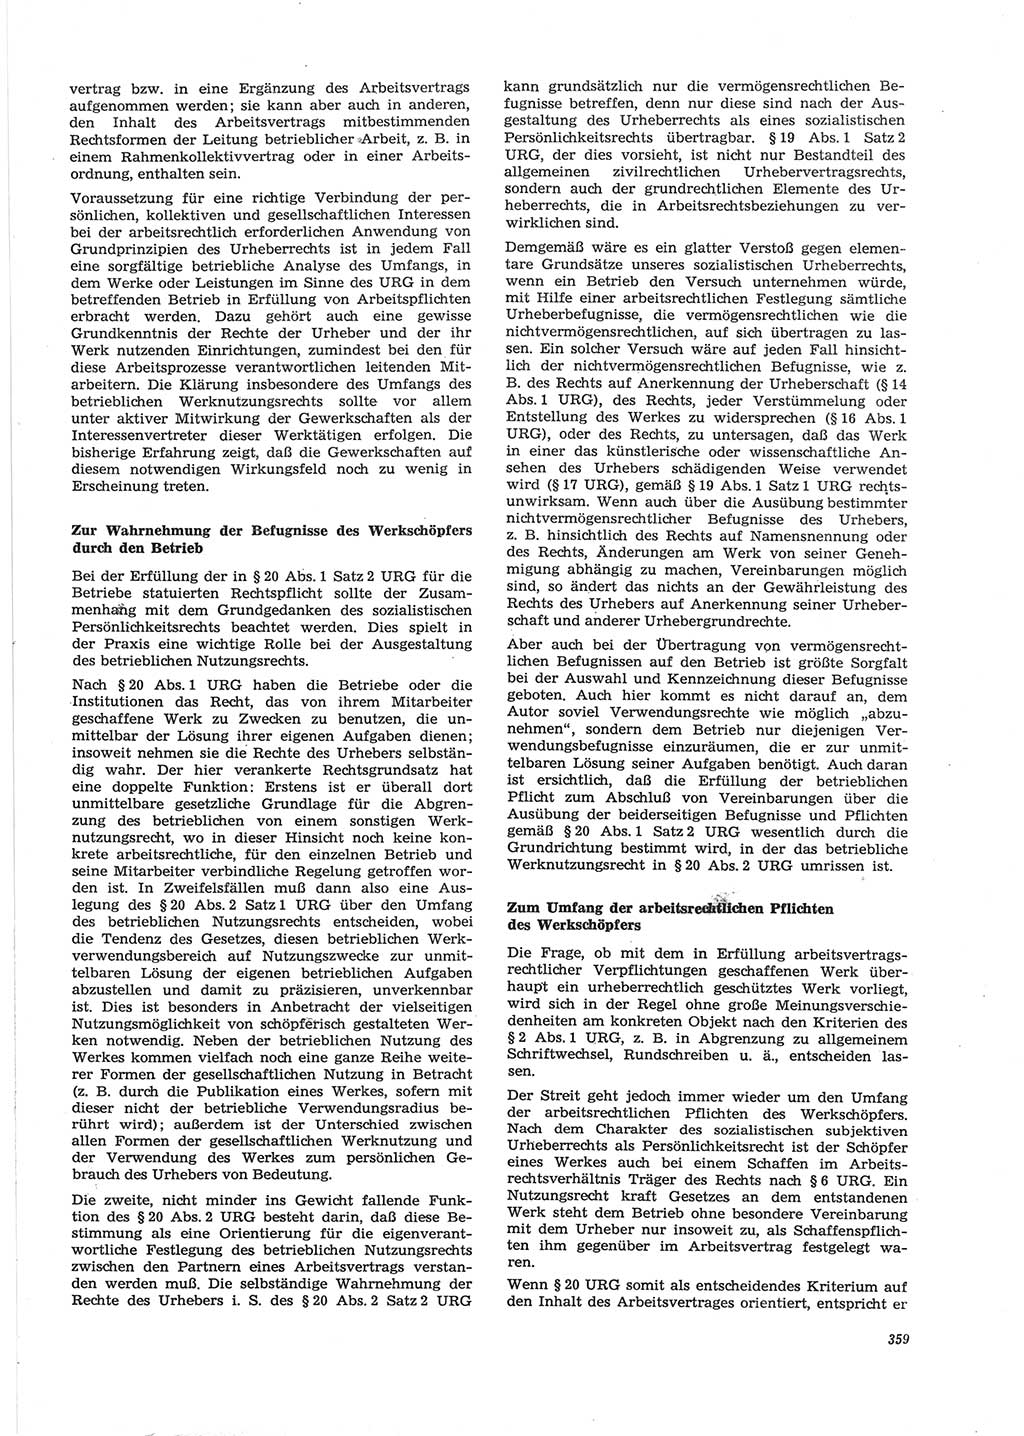 Neue Justiz (NJ), Zeitschrift für Recht und Rechtswissenschaft [Deutsche Demokratische Republik (DDR)], 28. Jahrgang 1974, Seite 359 (NJ DDR 1974, S. 359)